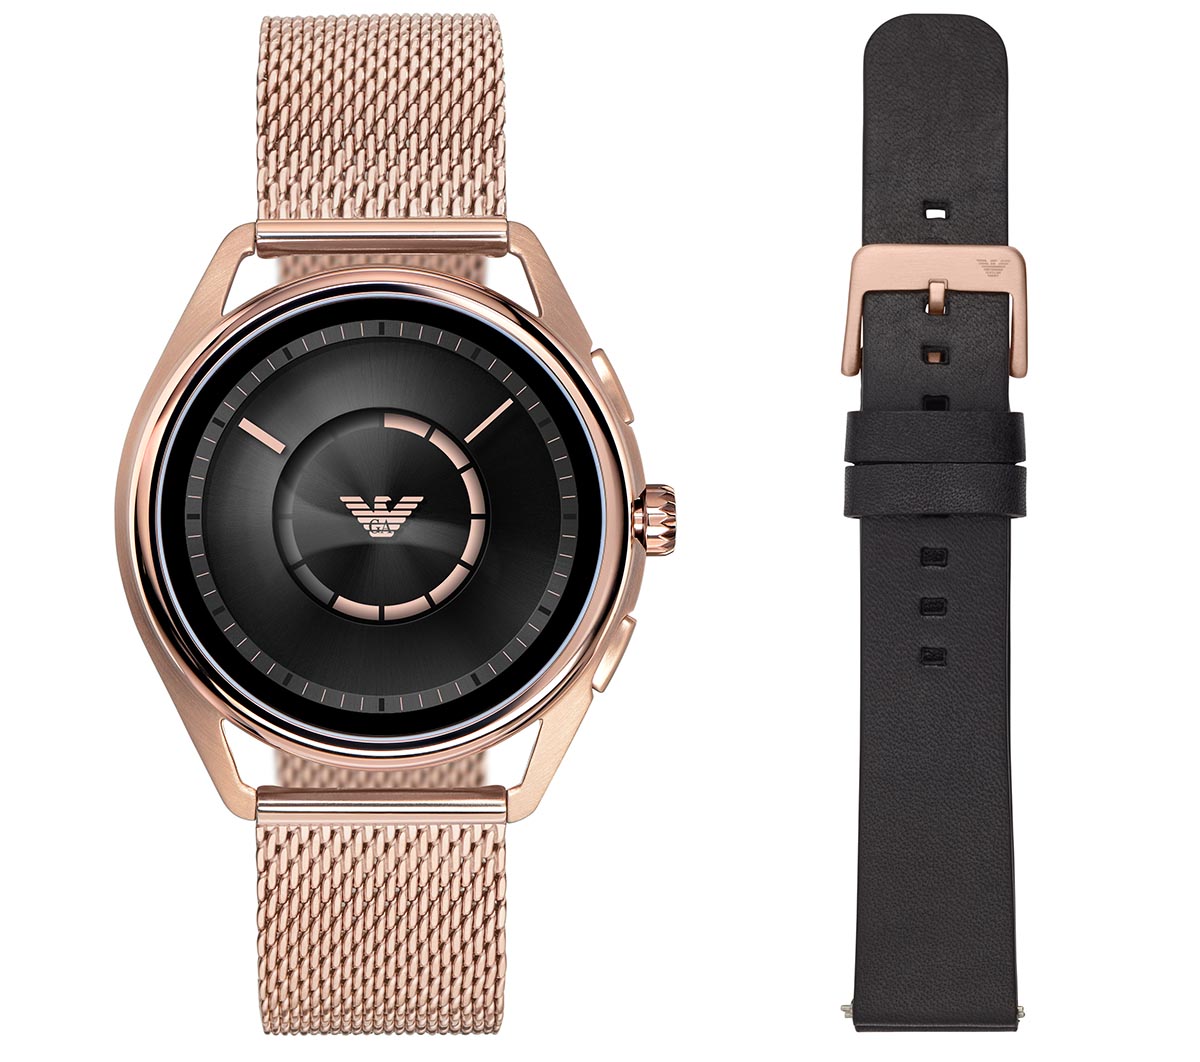 Smartwatch de Emporio Armani, relojes inteligentes de diseño 1